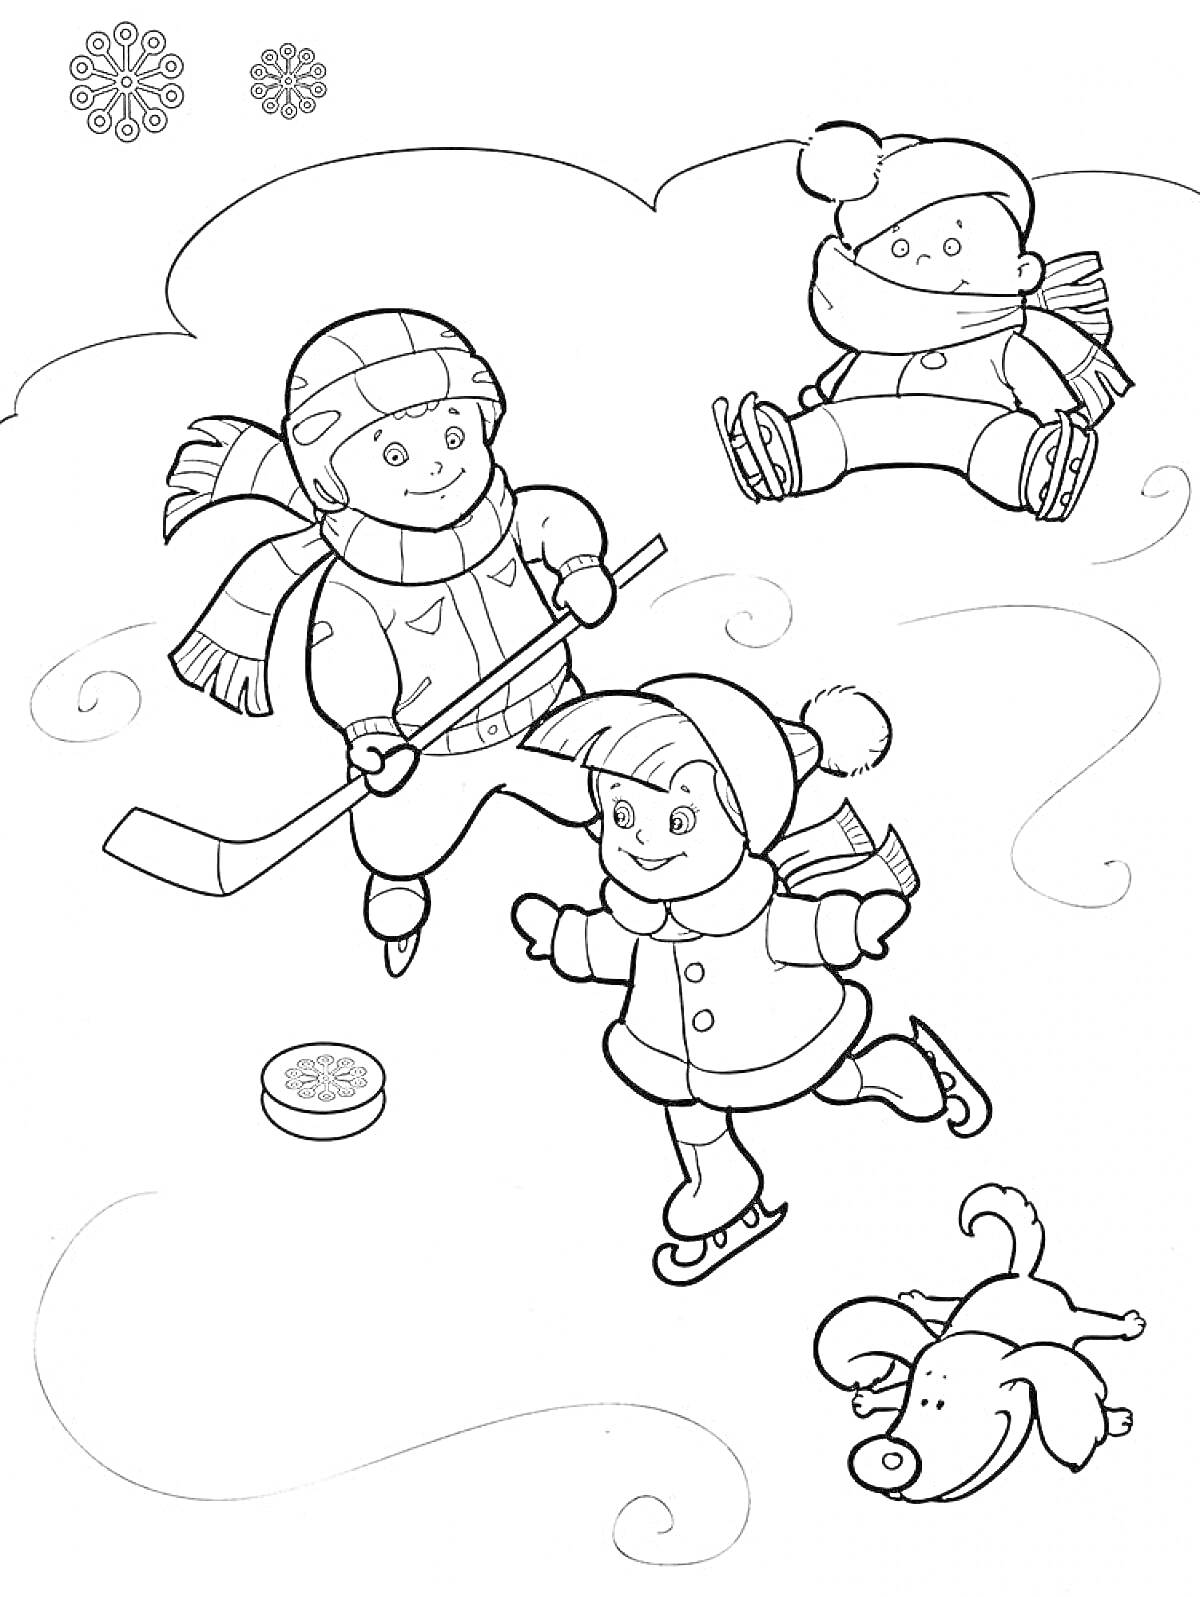 Дети играют в хоккей и катаются на коньках, с ребенком на санках и собакой на снегу